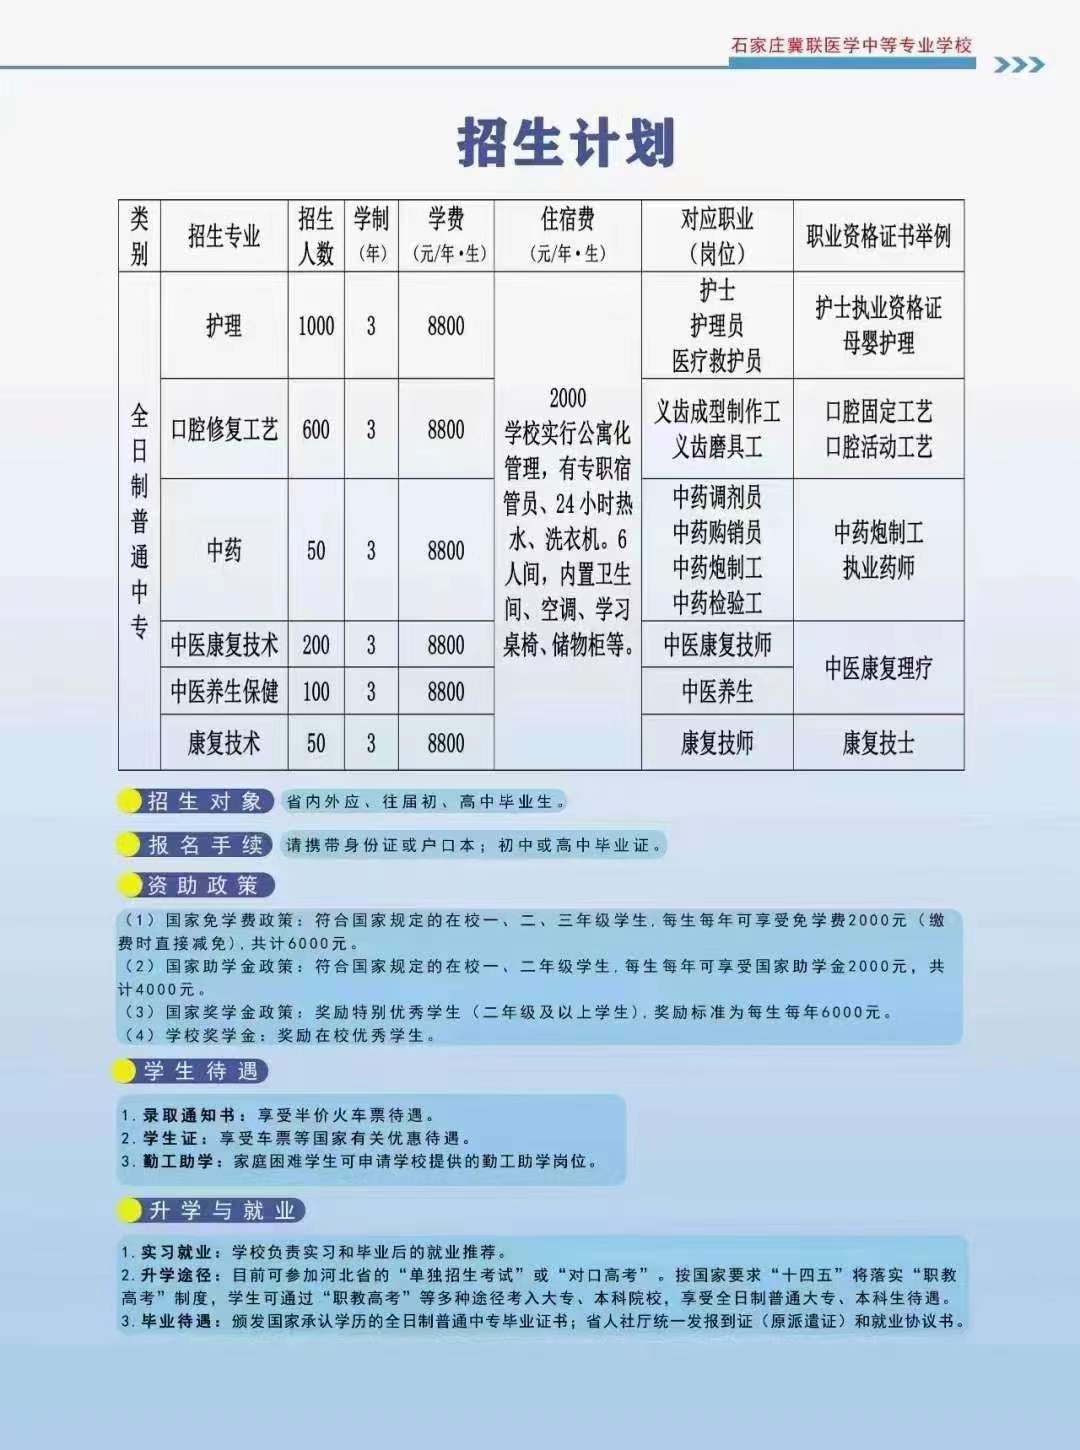 石家庄冀联医学院招生简章03.jpg